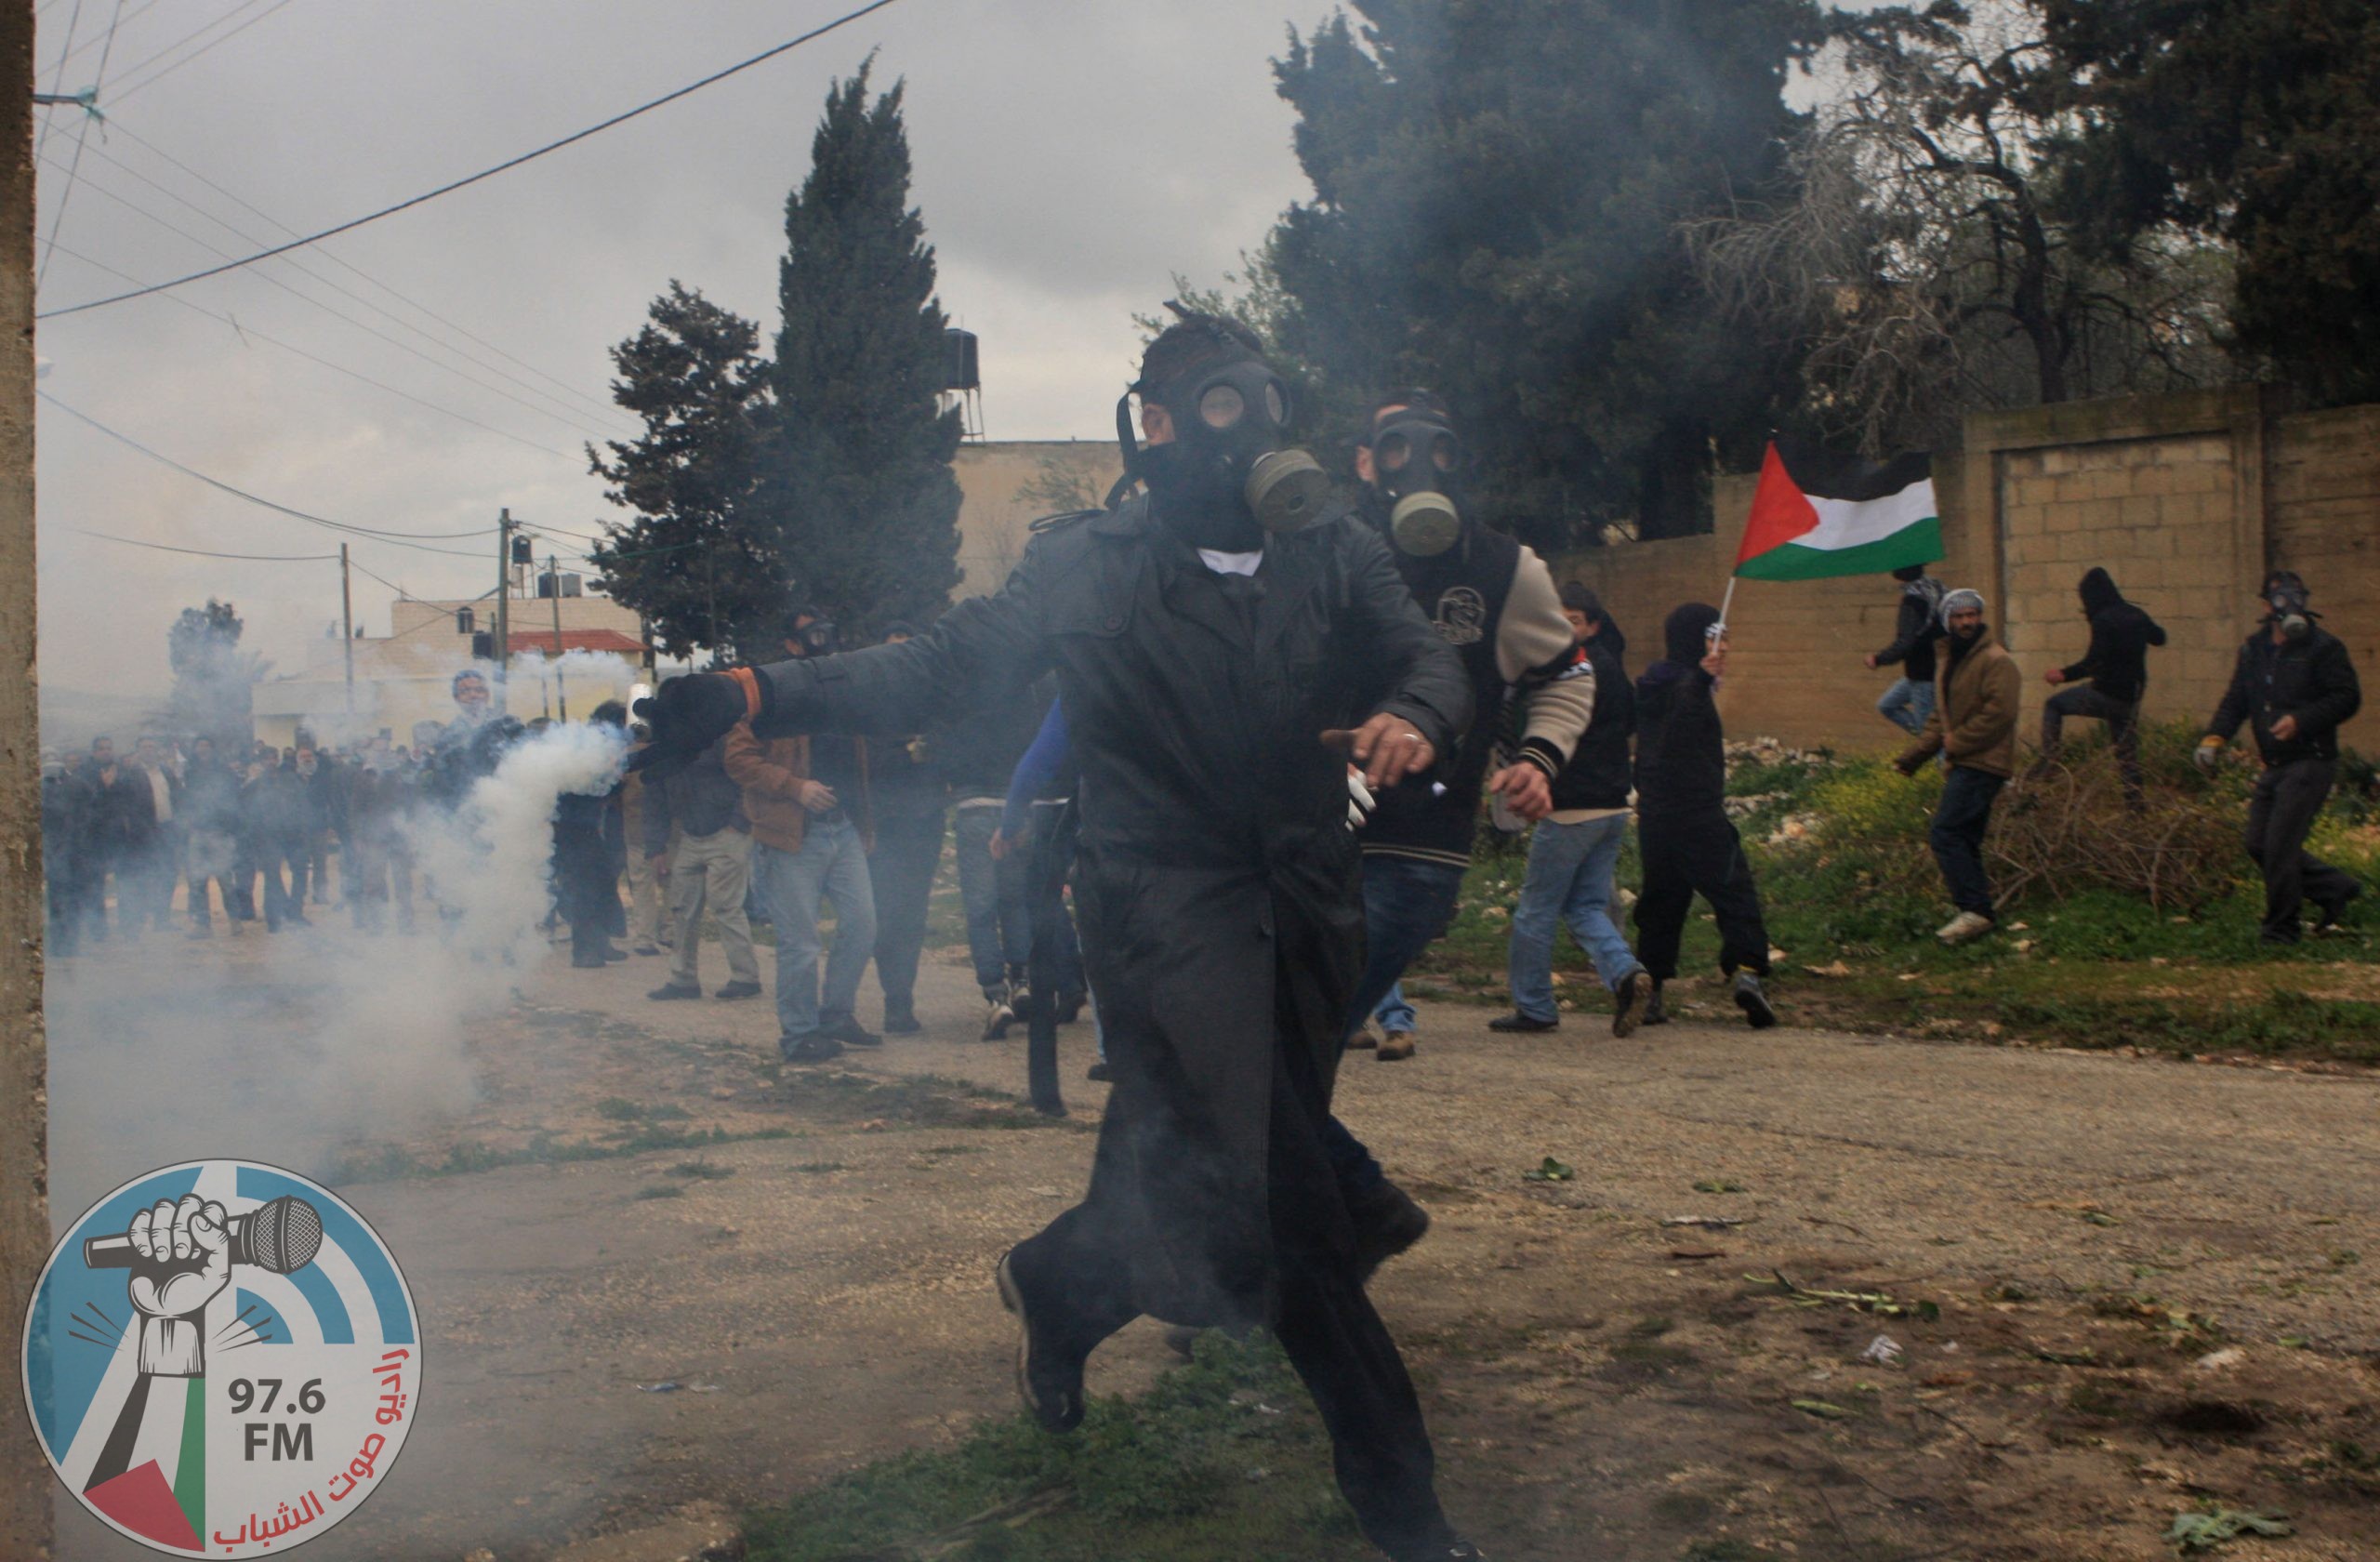 7 إصابات برصاص الاحتلال وعشرات حالات الاختناق في مسيرة كفر قدوم الأسبوعية